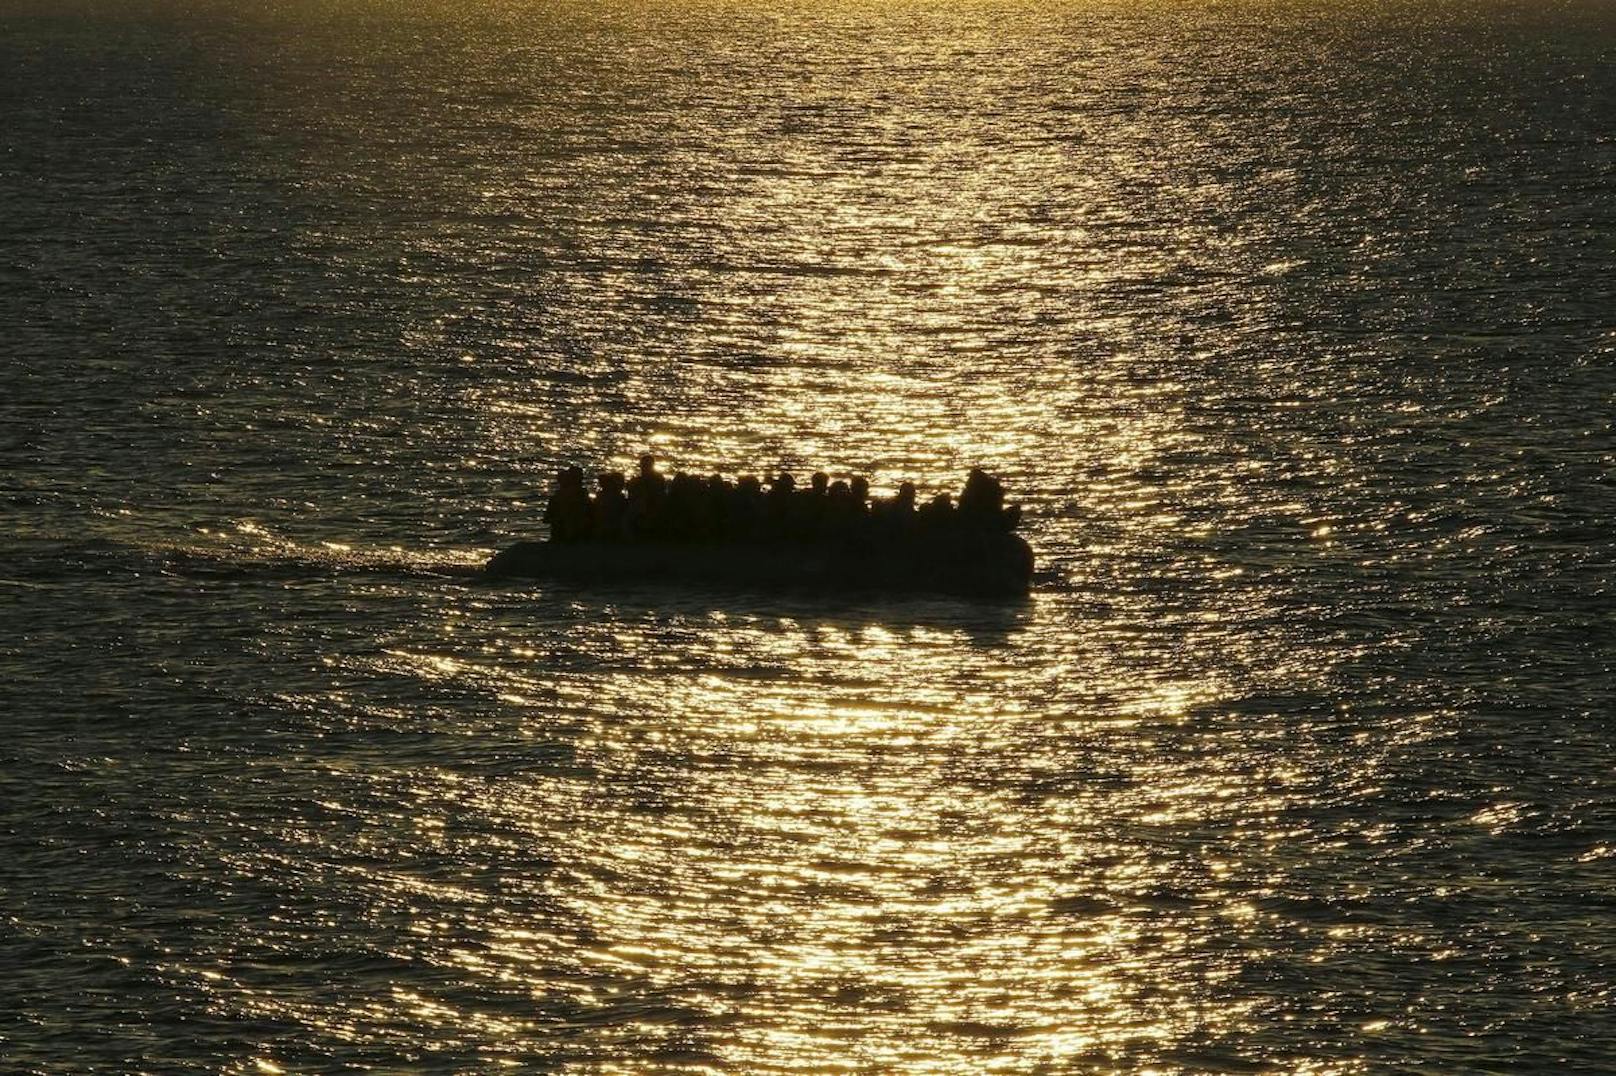 Immer wieder versuchen Flüchtlinge per Boot von Afrika nach Europa zu gelangen.